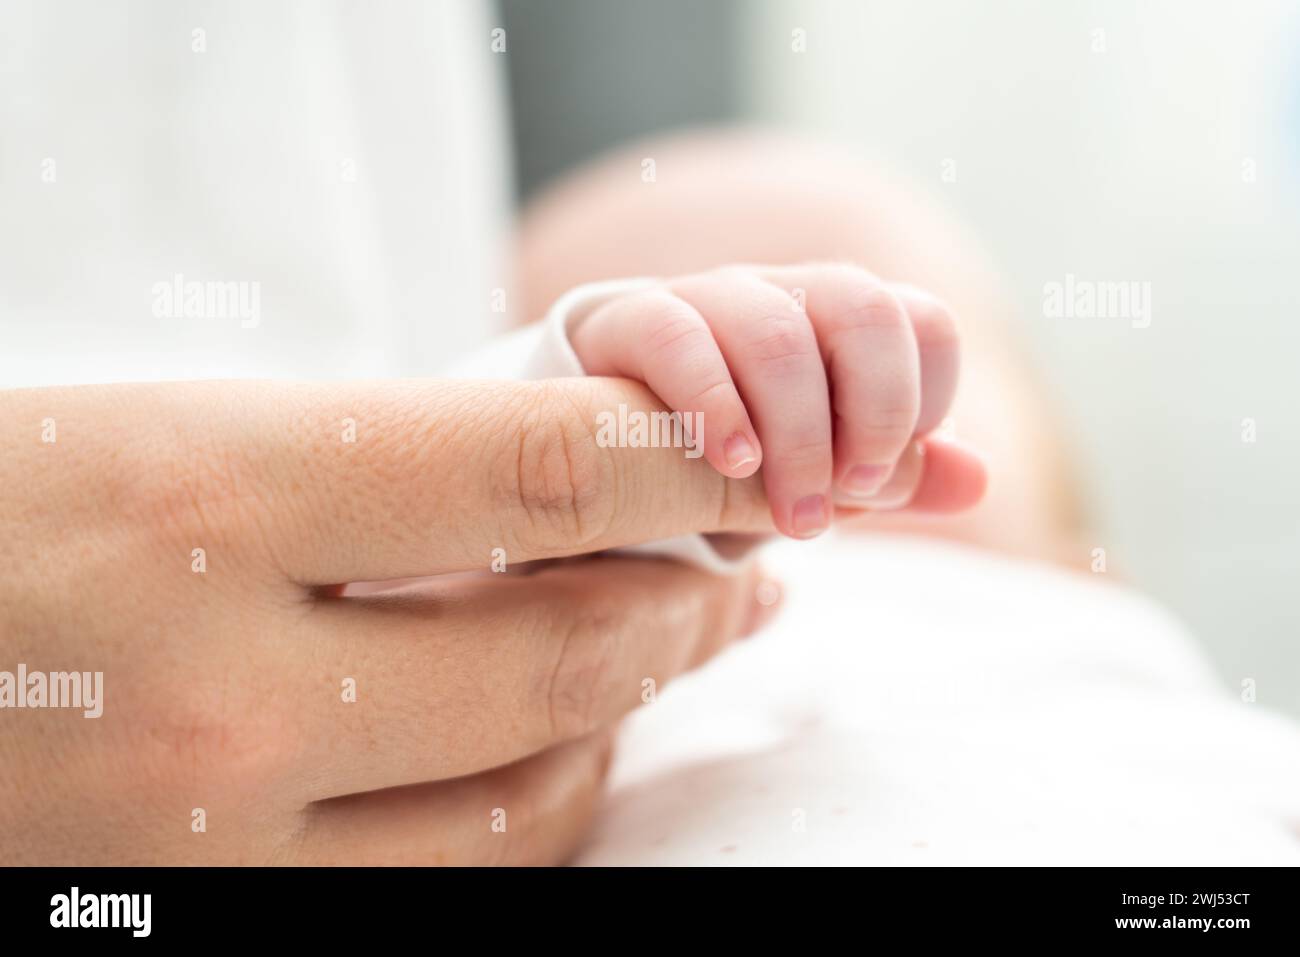 Das Neugeborene findet Trost in der Berührung der Mutter. Konzept der unausgesprochenen Versprechen und des Schutzes Stockfoto